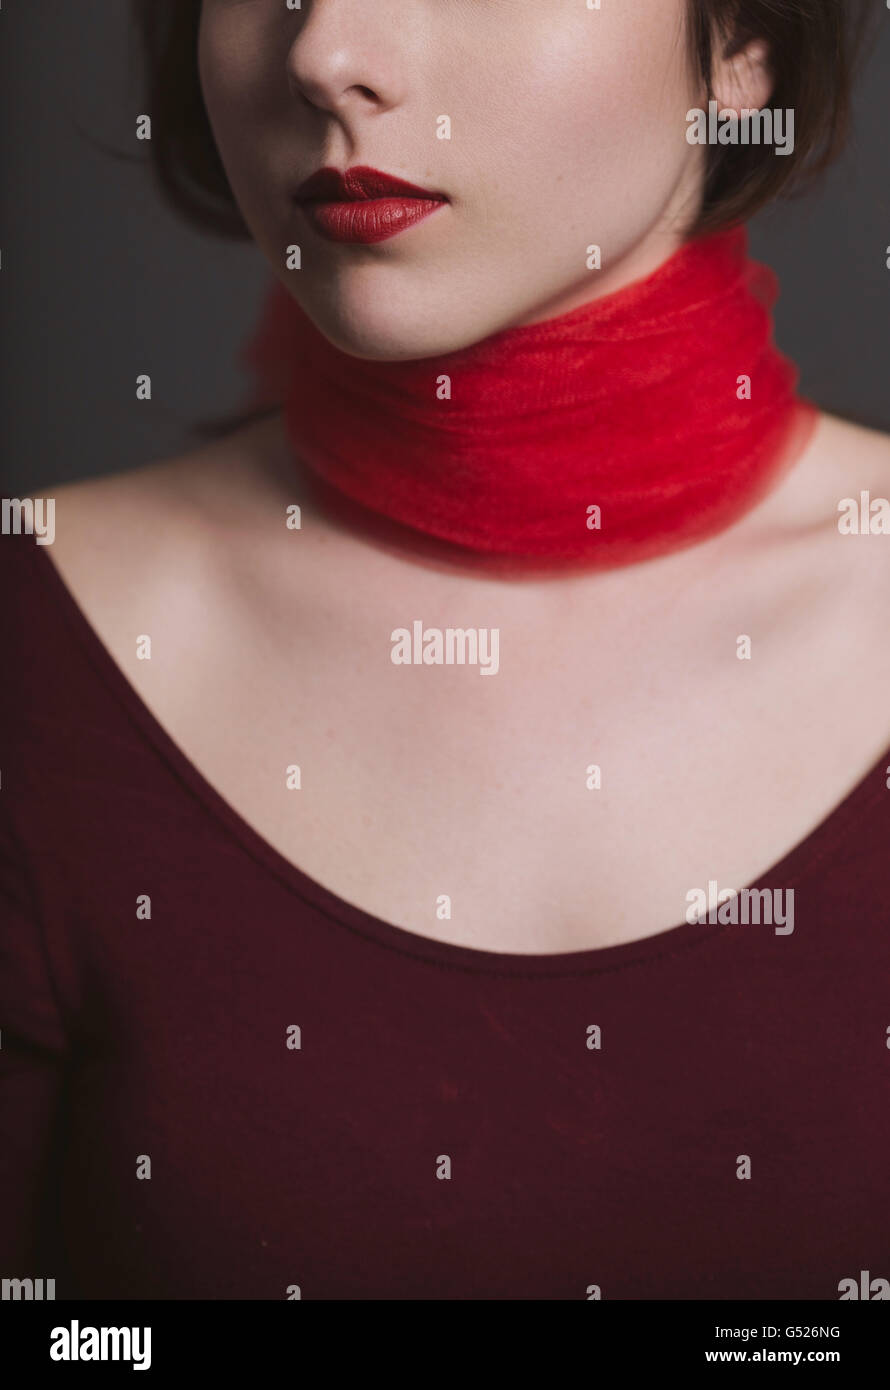 Closeup ritratto di una giovane donna con un nastro rosso attorno al collo Foto Stock